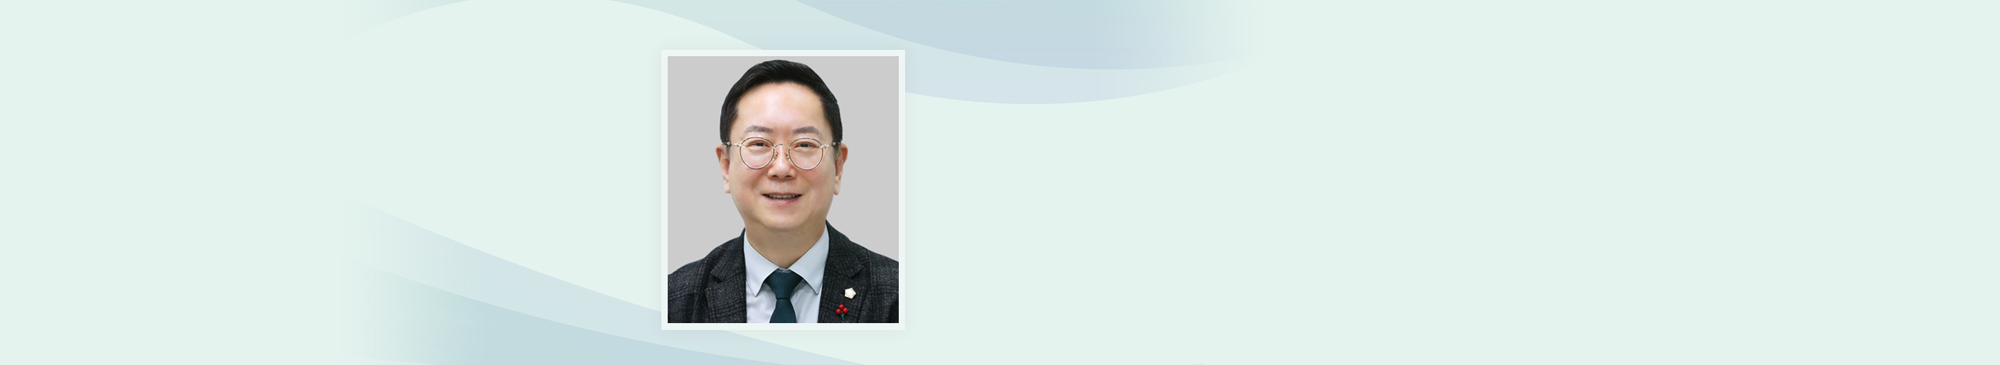 의원 김광철입니다.